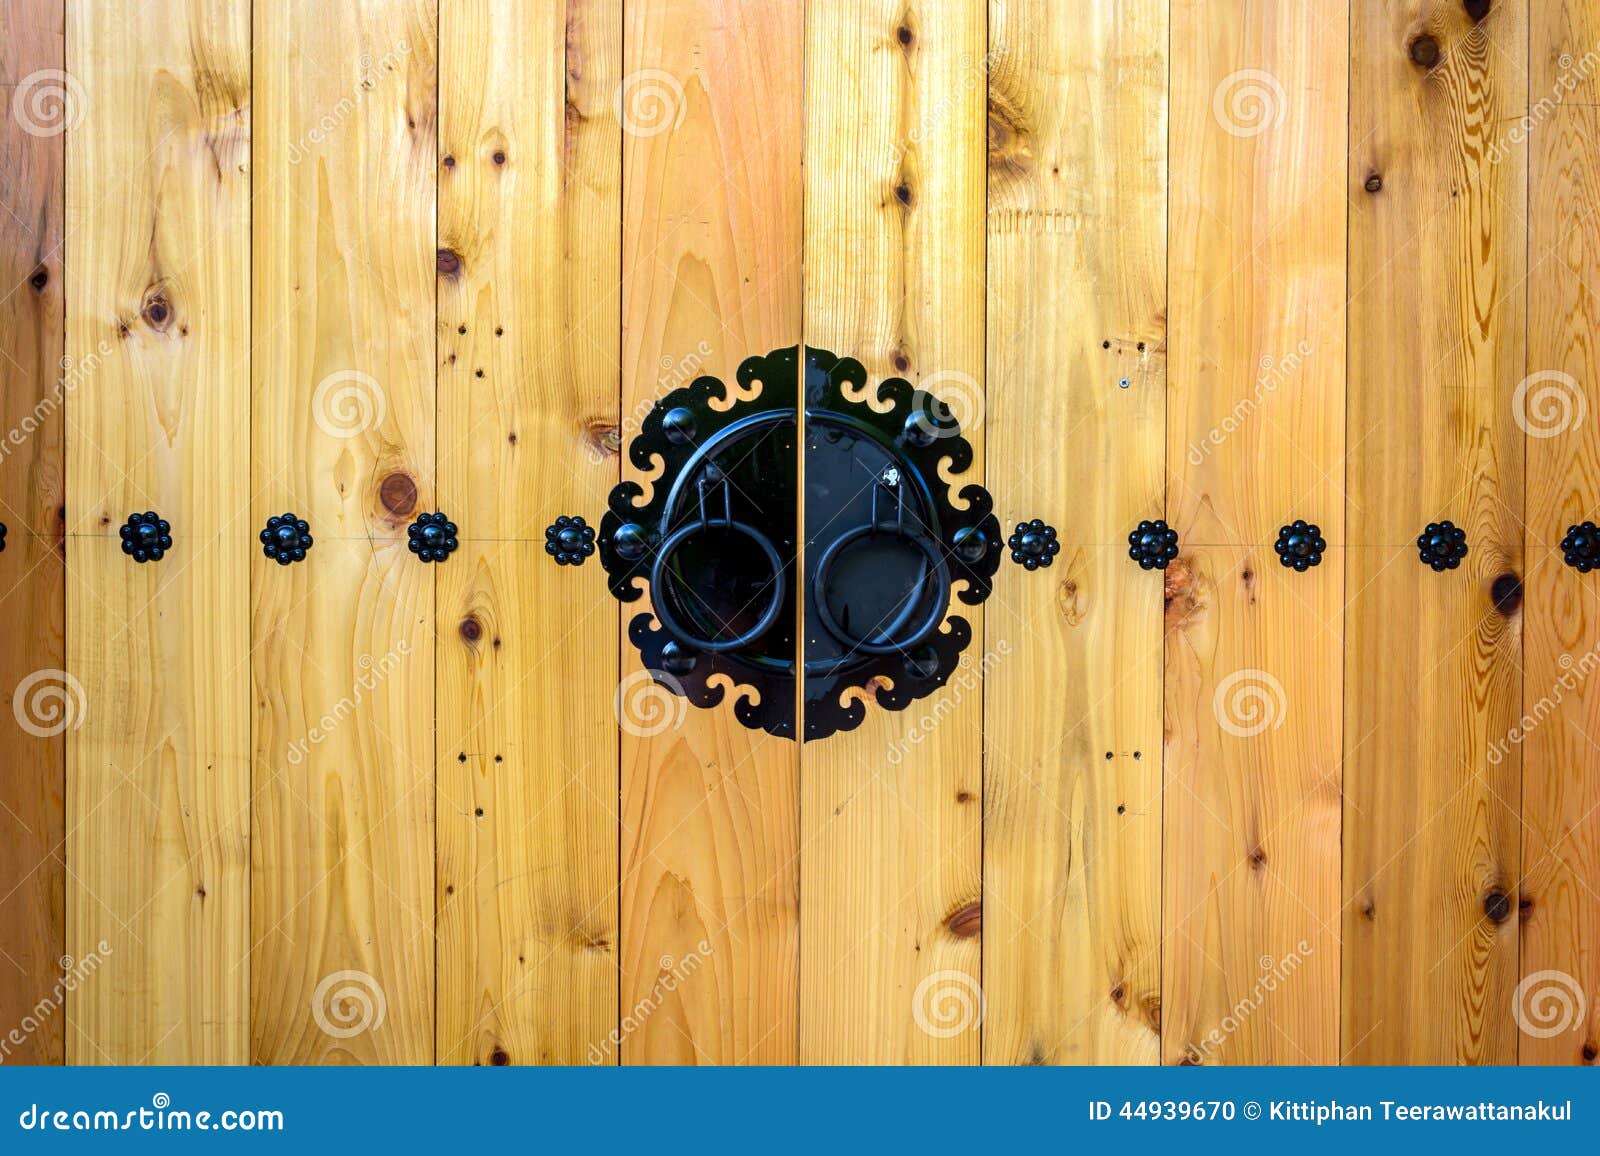 Wooden Door Korean Style Stock Photo Image 44939670